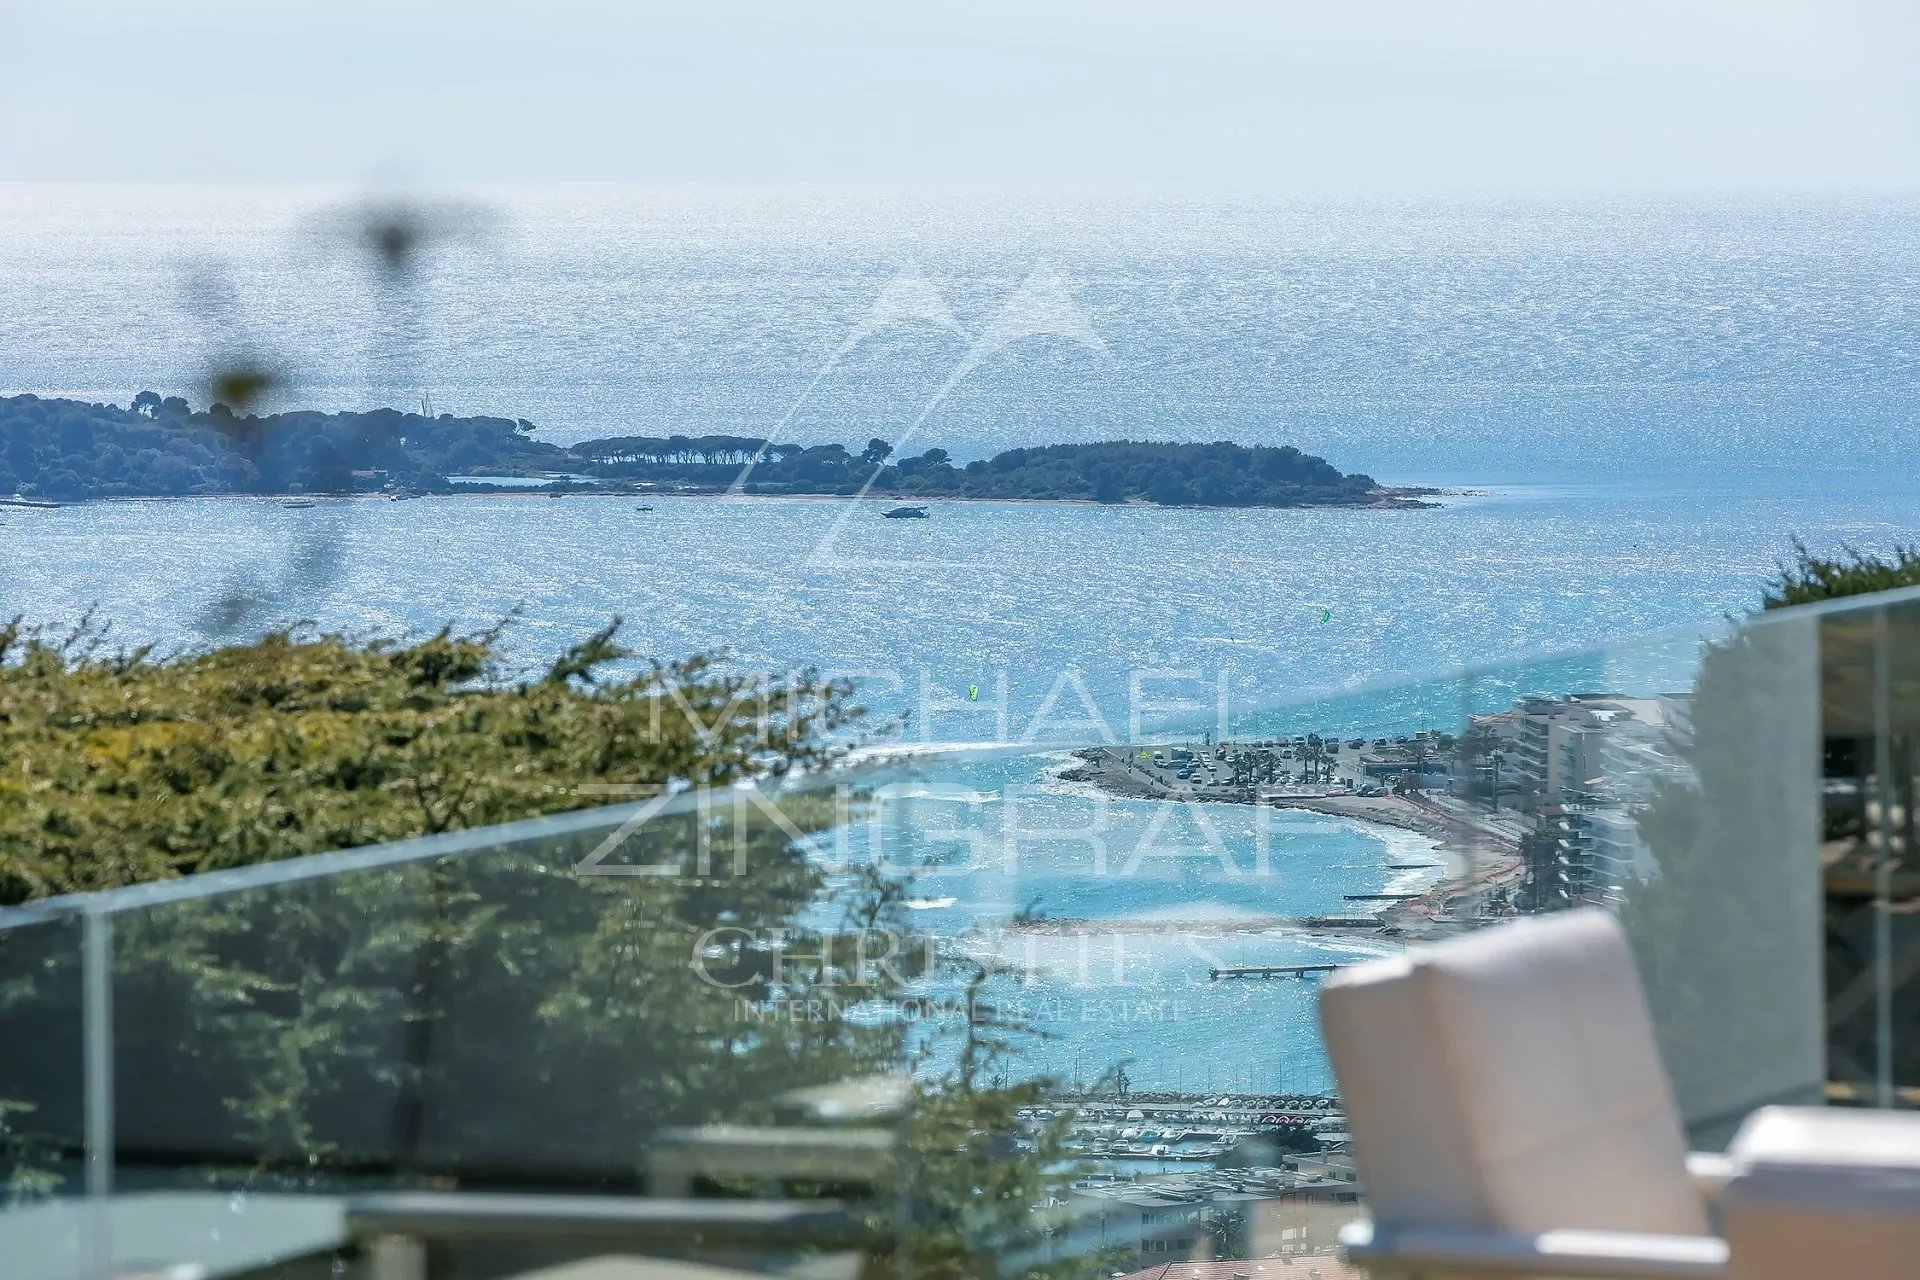 Cannes Californie - Moderne Villa